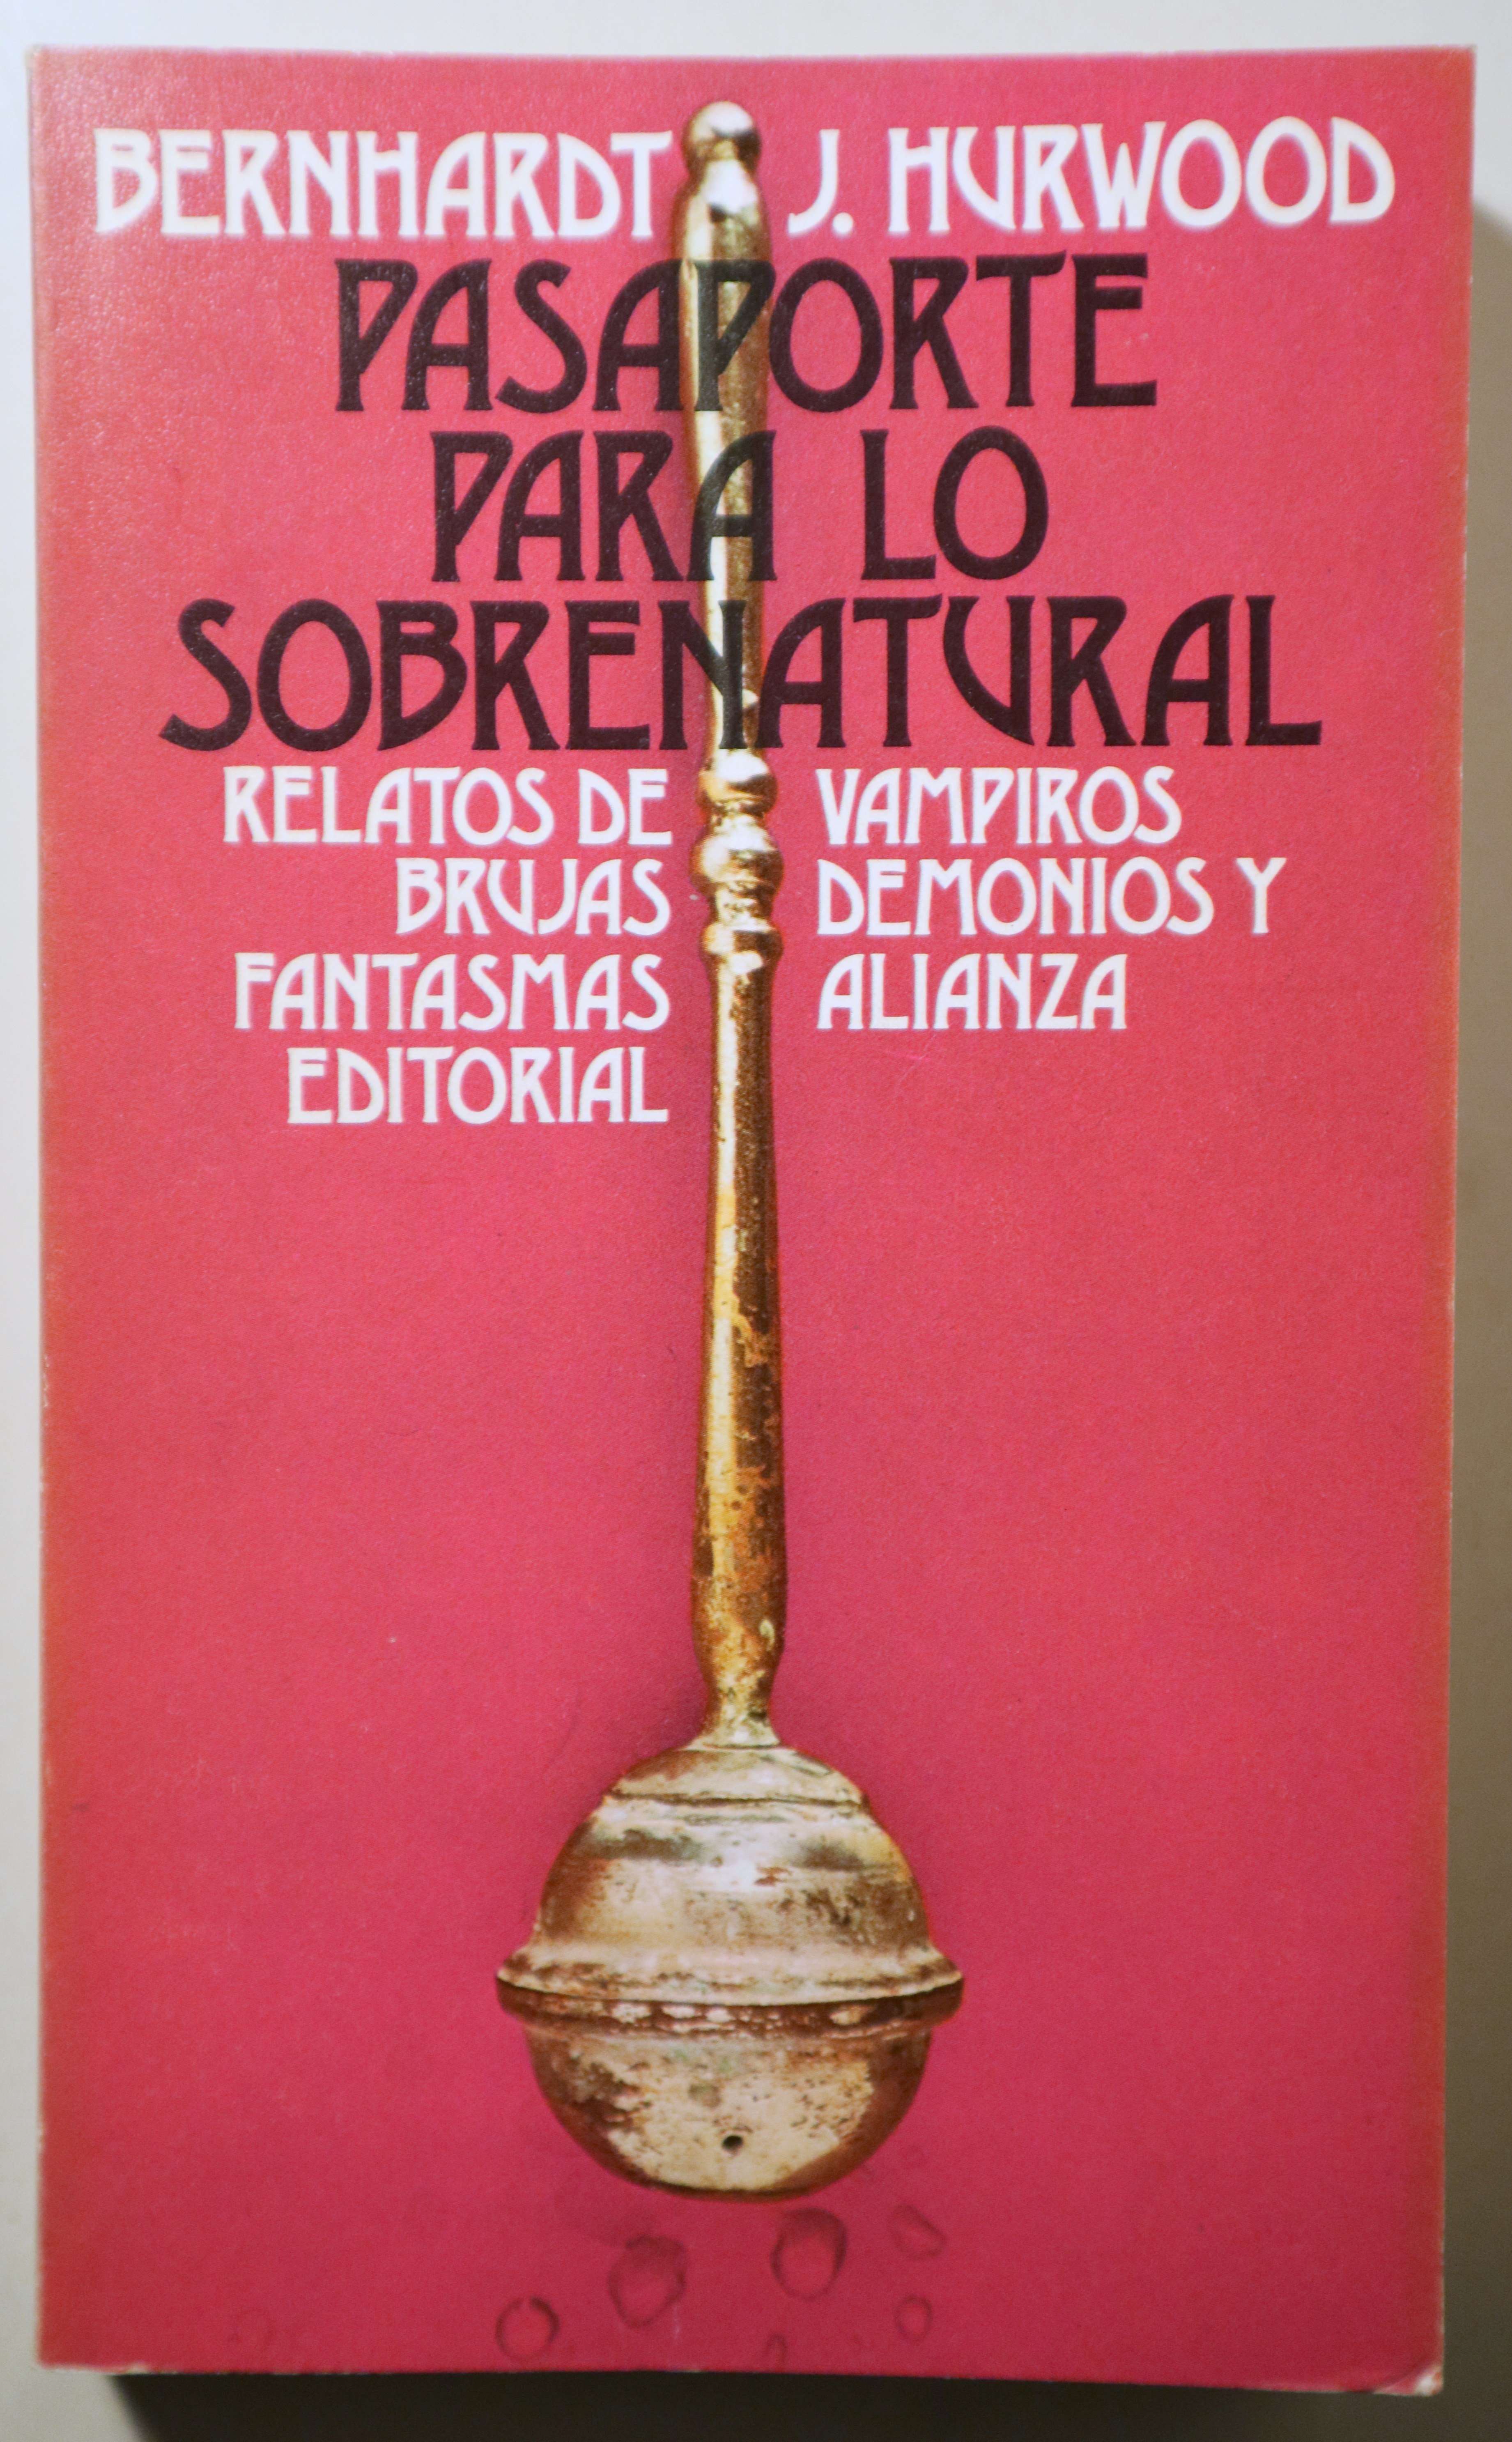 PASAPORTE PARA LO SOBRENATURAL. Relatos de vampiros, brujas, demonios y fantasmas - Madrid 1974